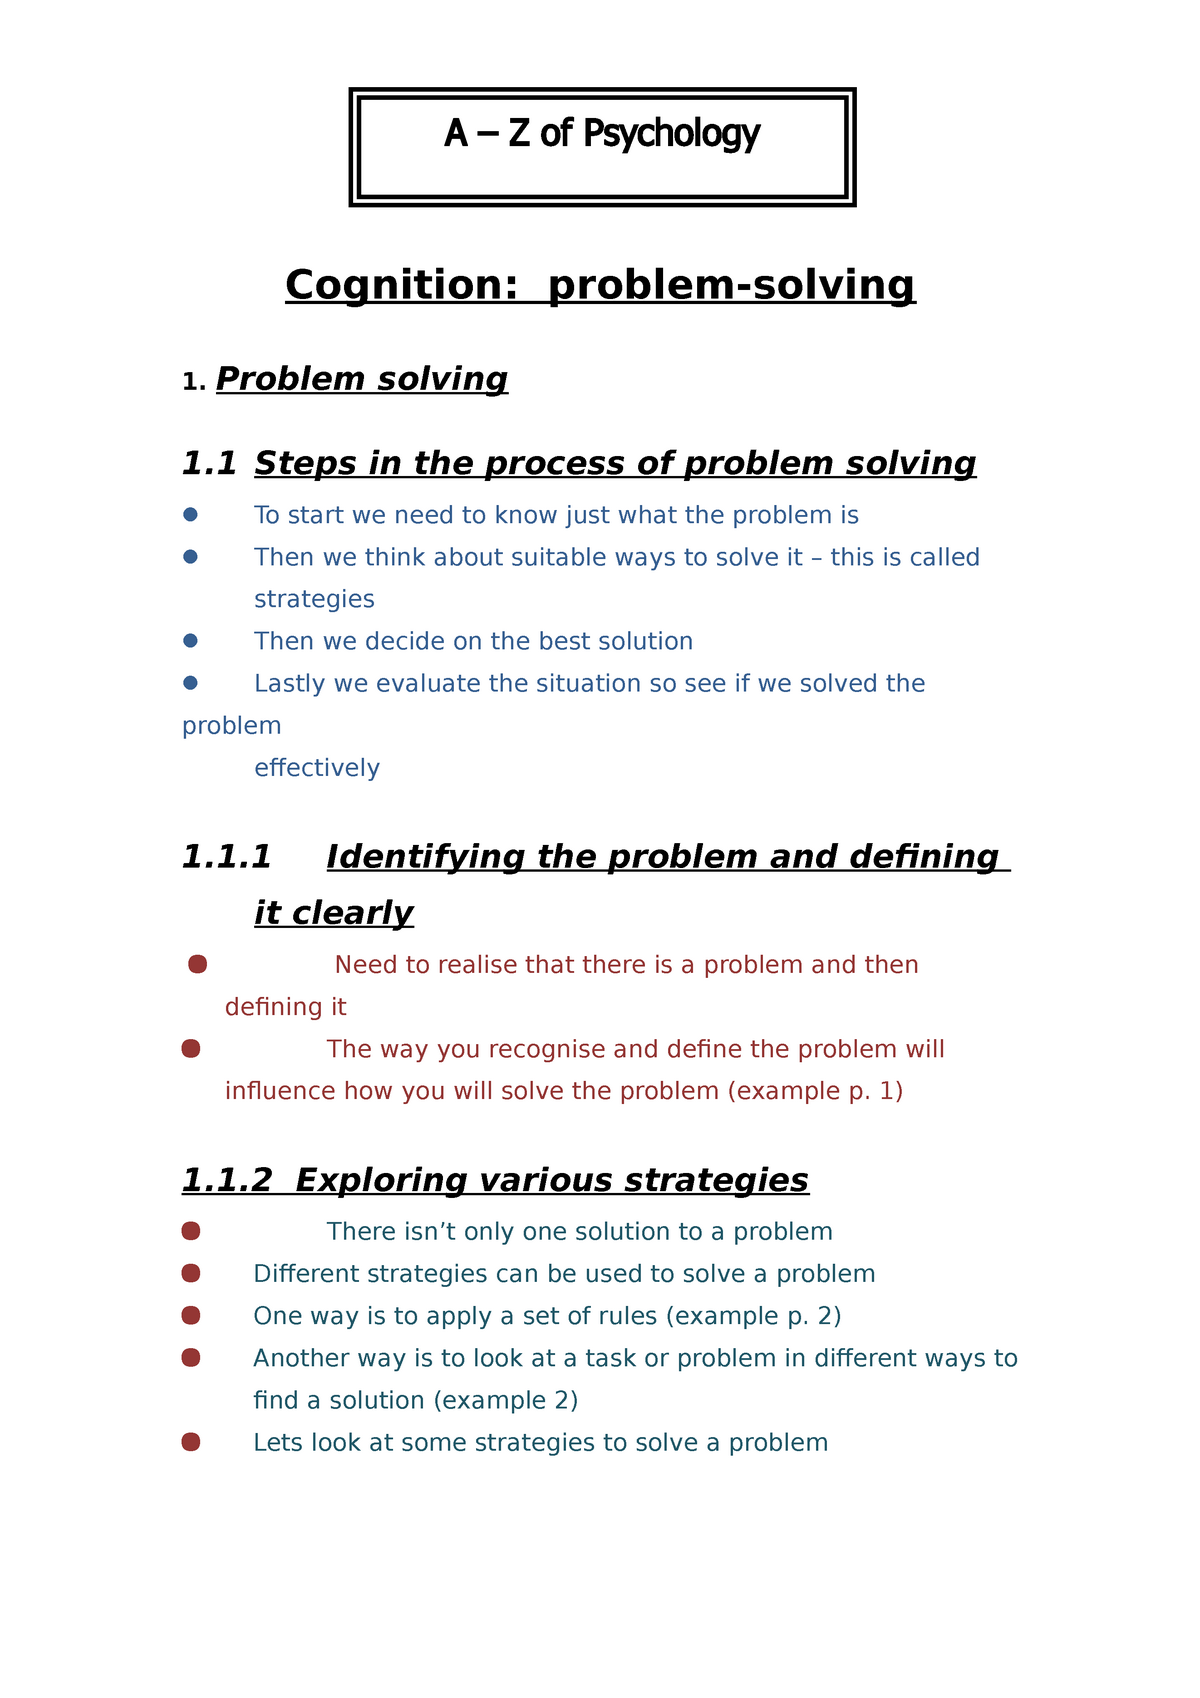 factors affecting problem solving in cognitive psychology ignou